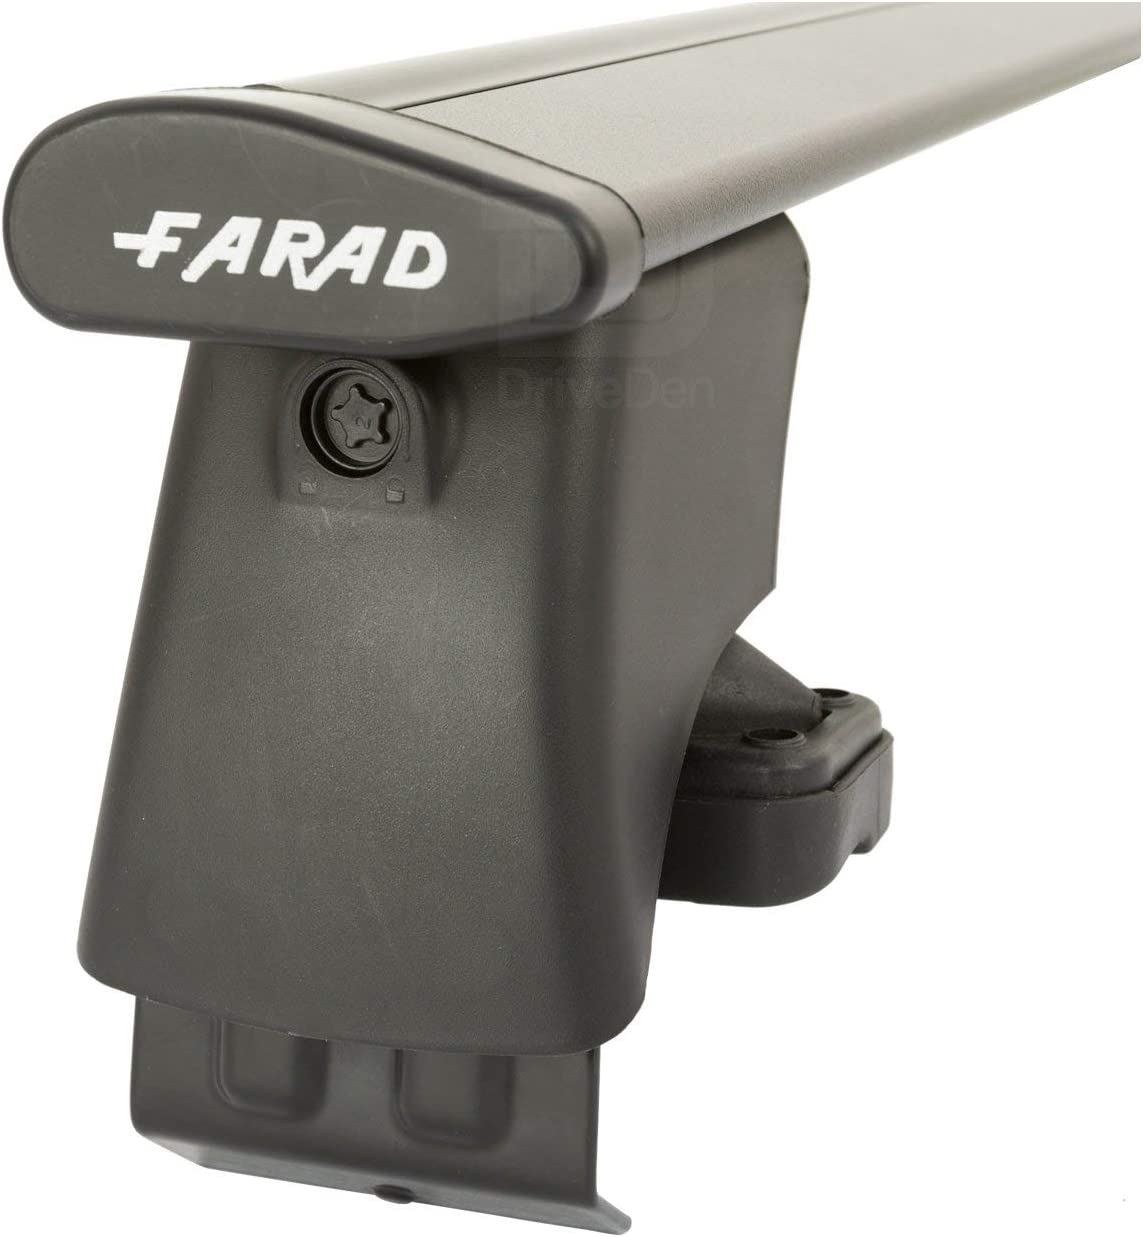 FARAD-Kit H2 per barre portatutto - Toyota Corolla 1997-2002 (senza corrimano)